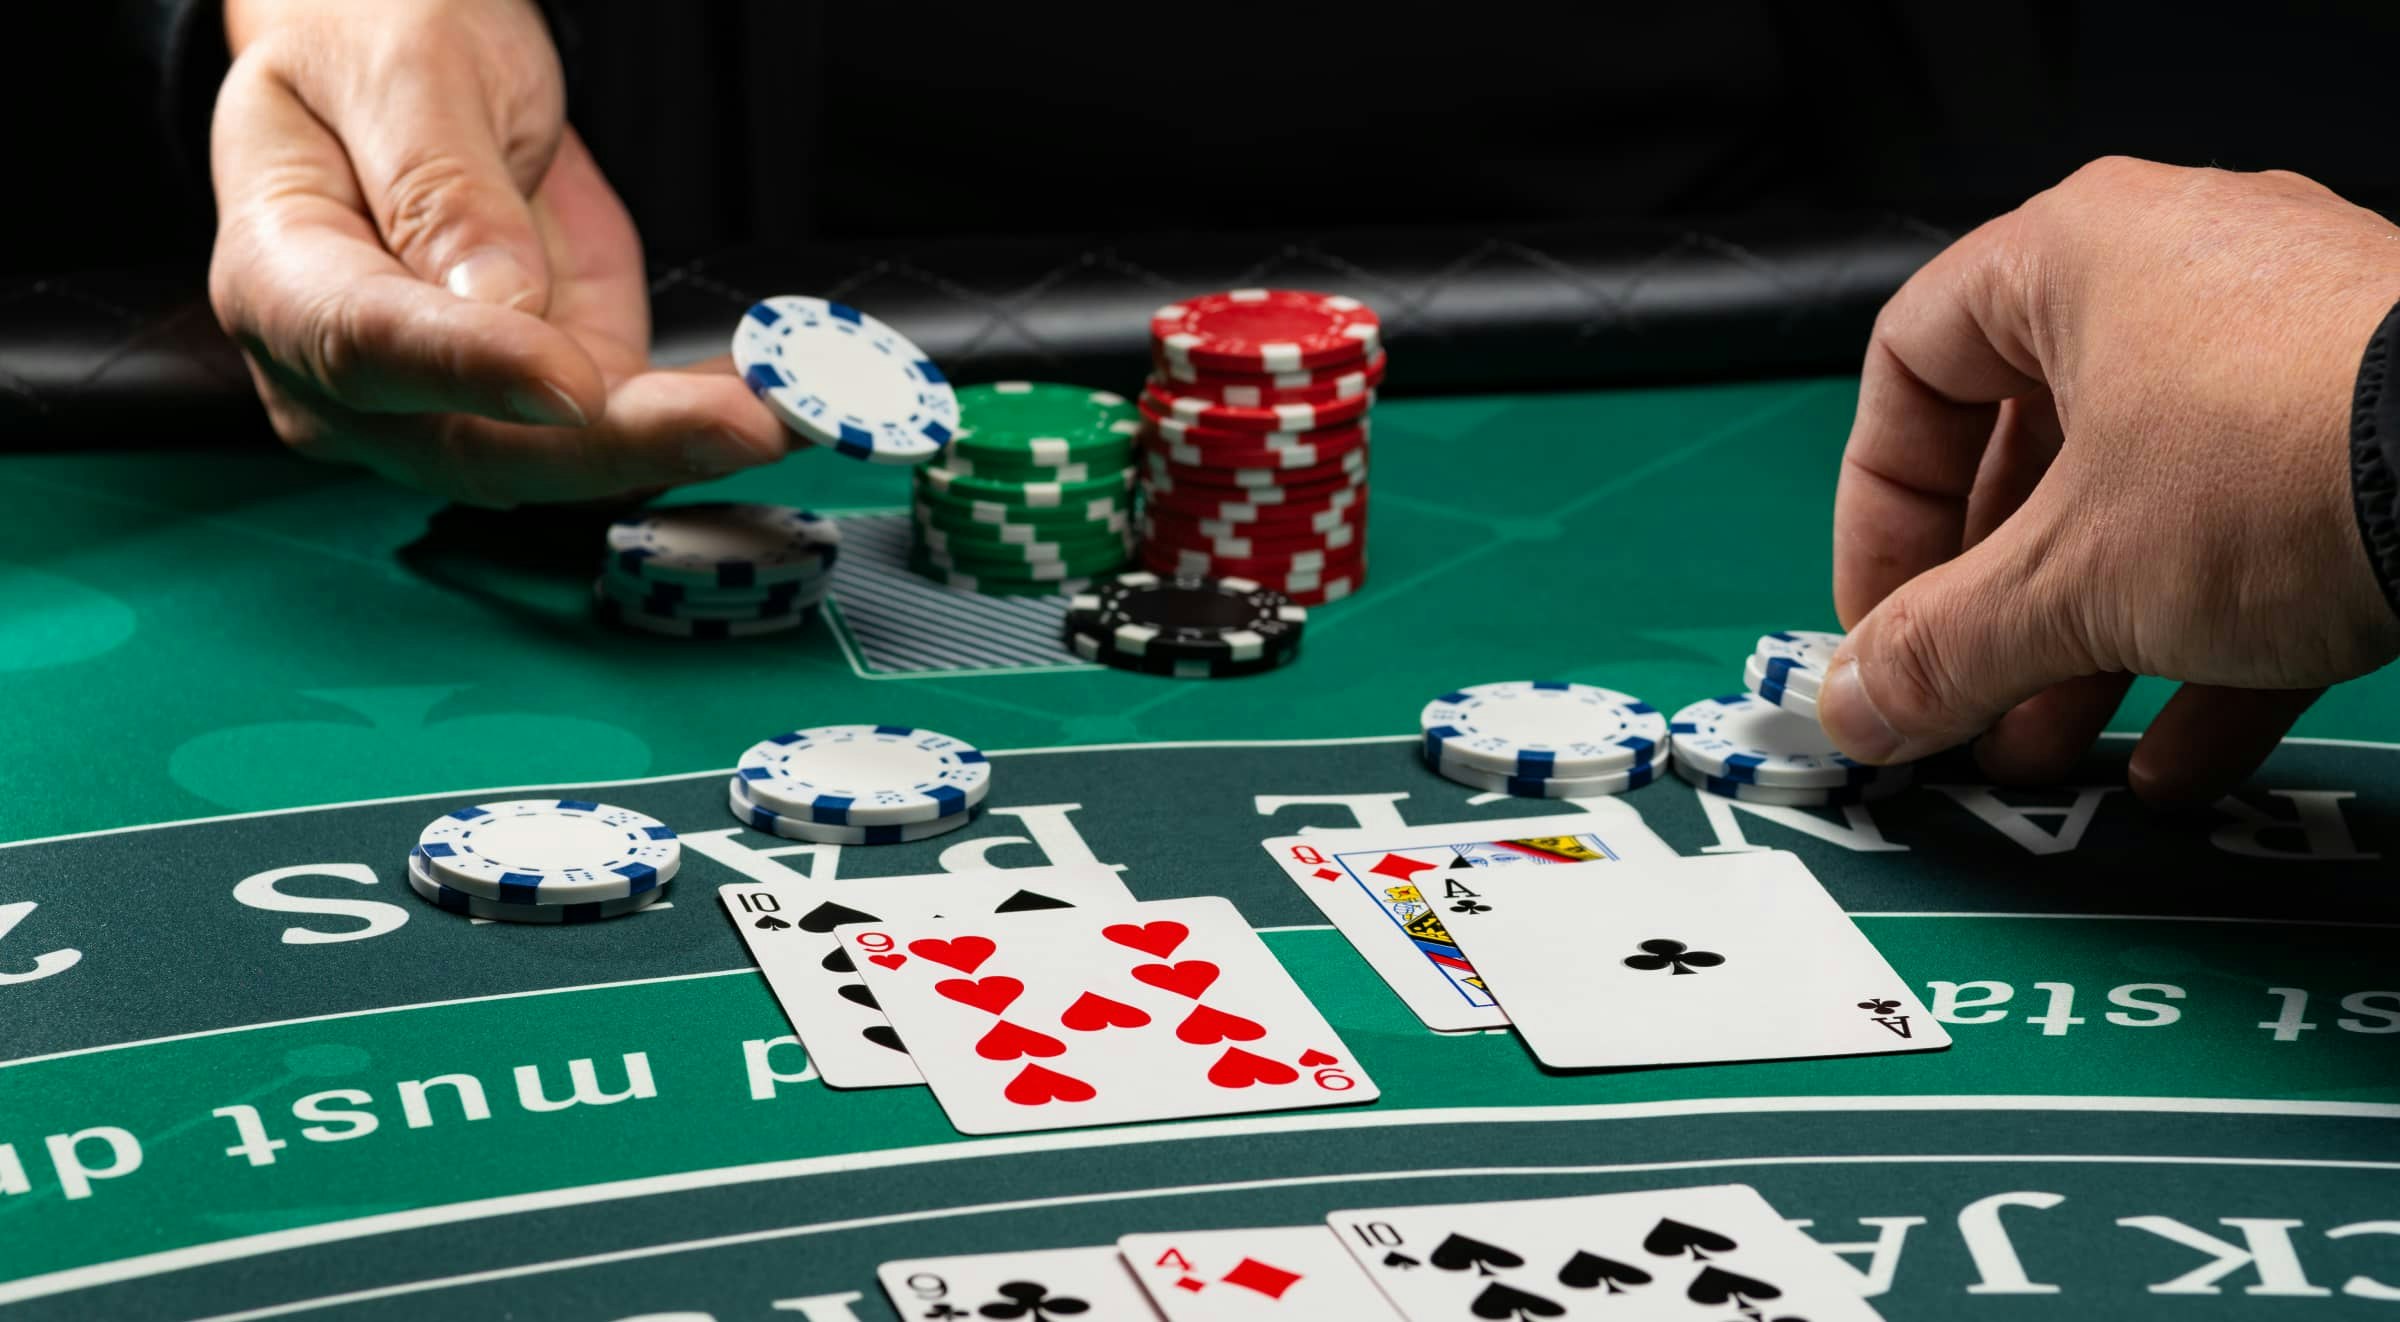 Les avantages de jouer pour le fun au blackjack en ligne